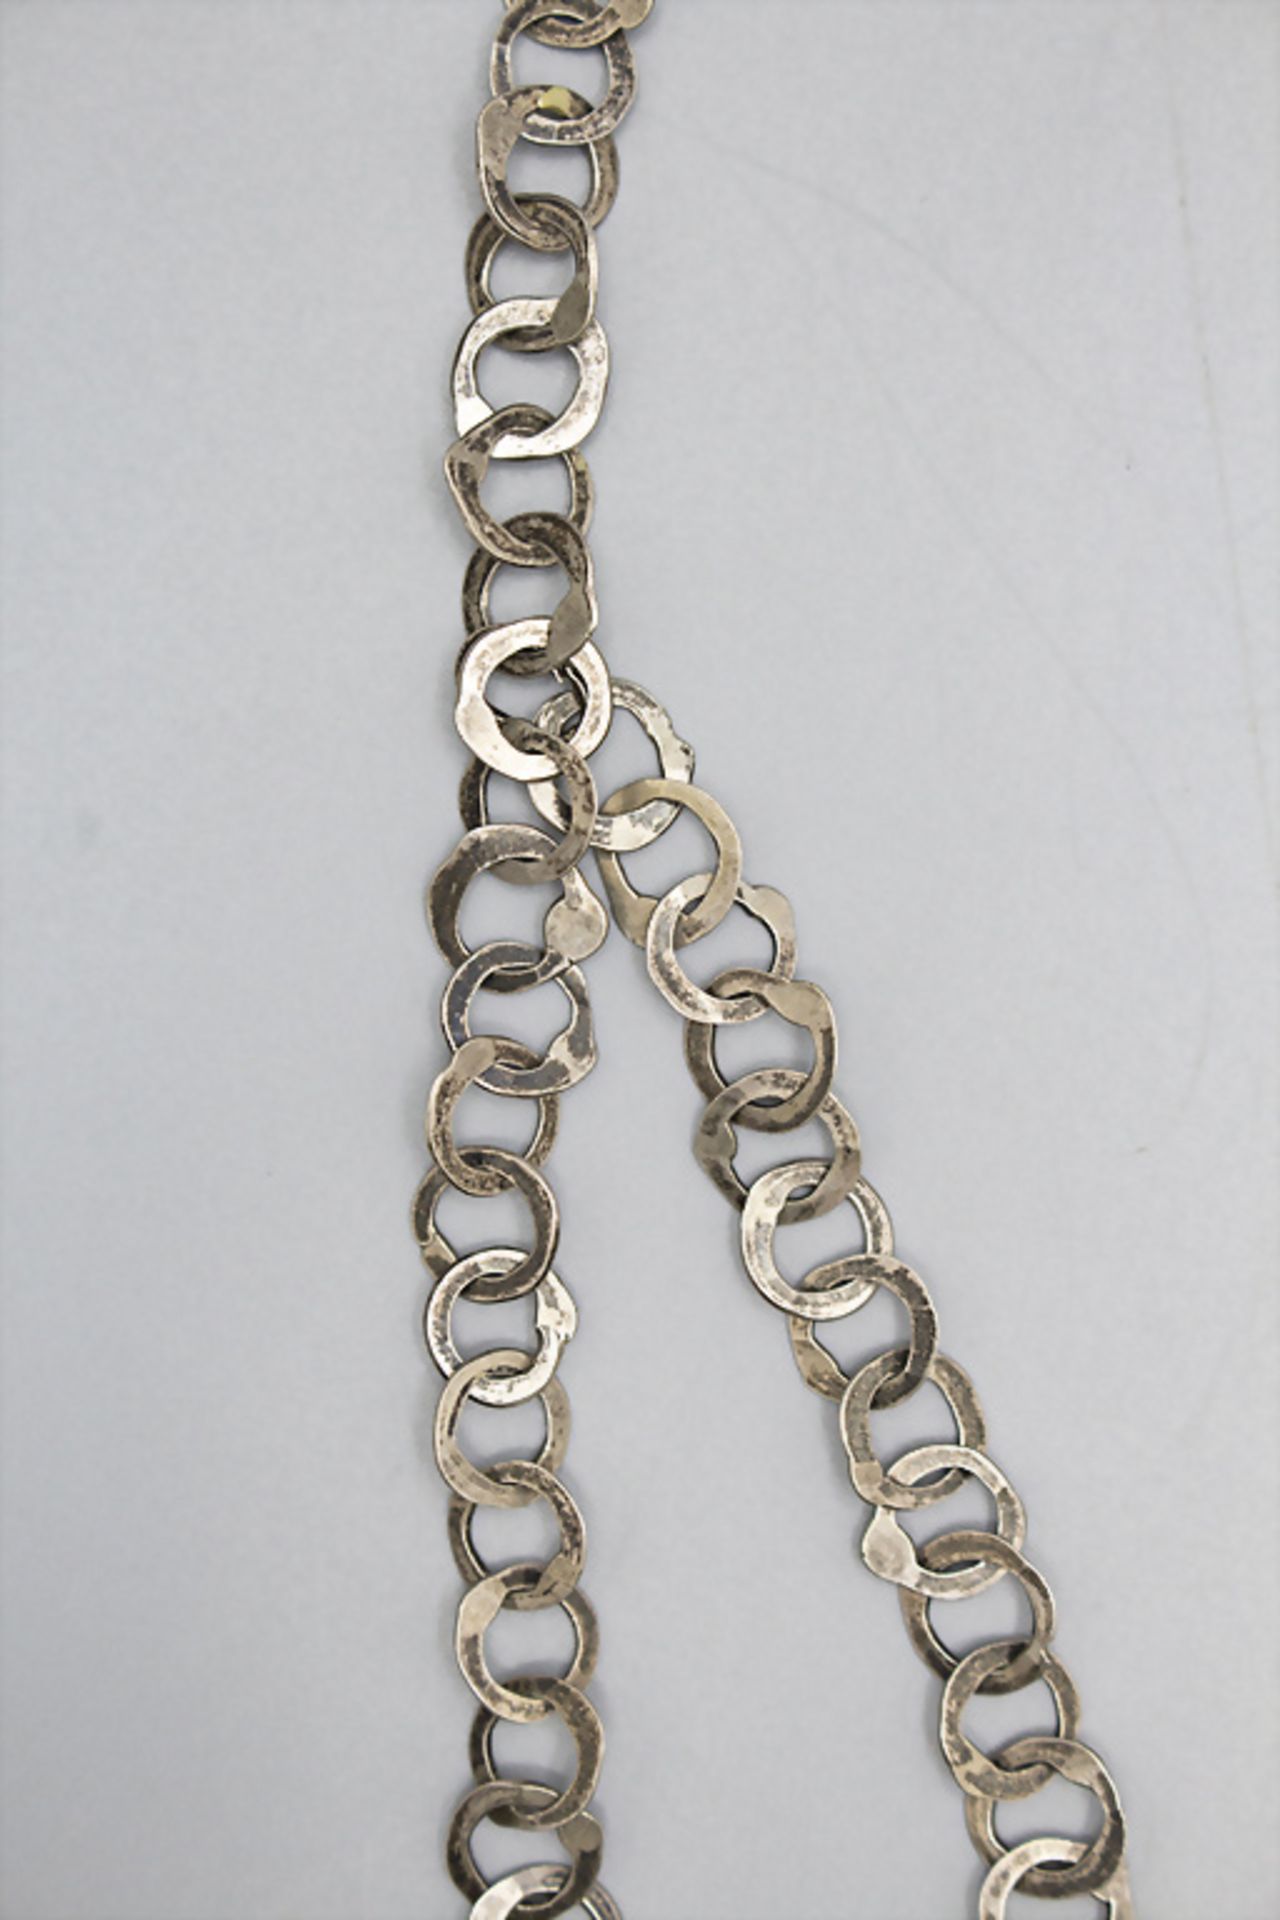 Vintage Silberkette / A vintage silver necklace, wohl 1970er Jahre - Bild 3 aus 3